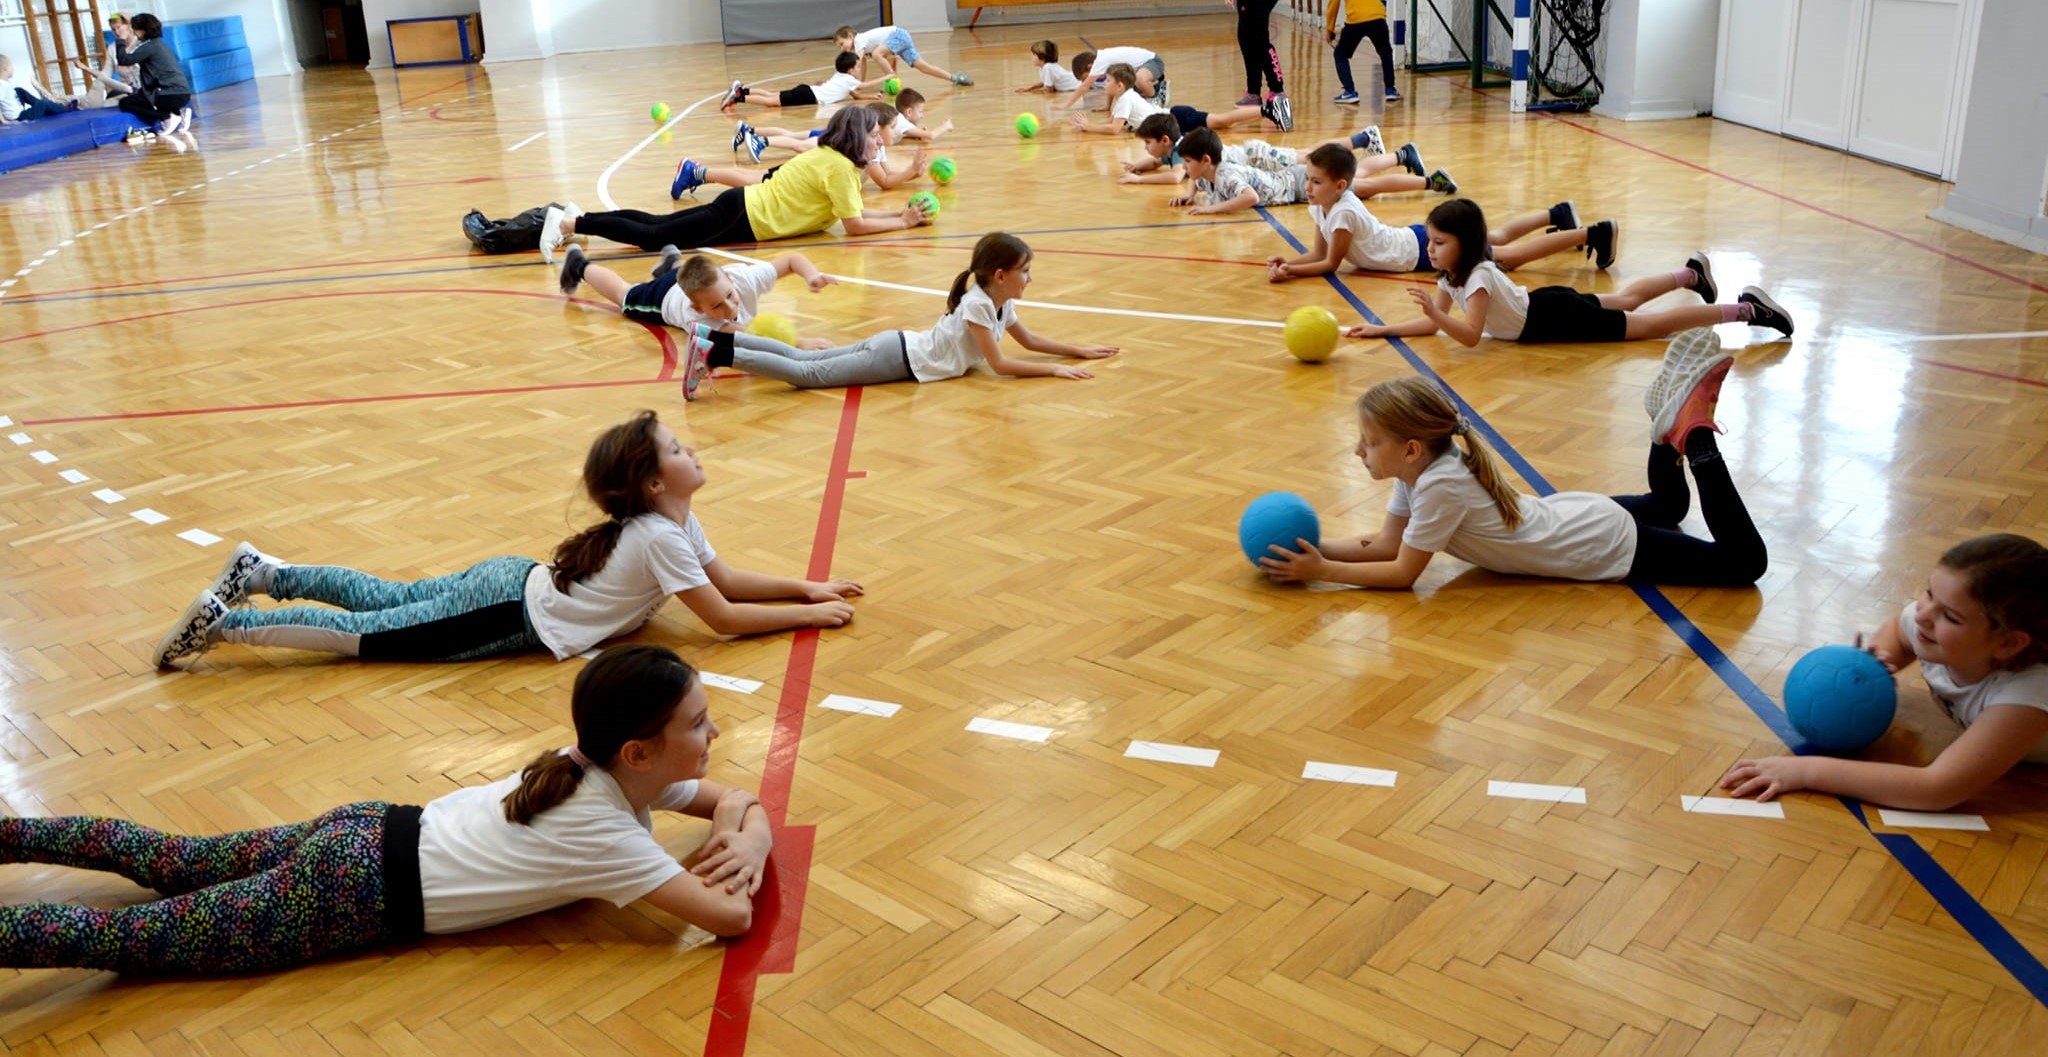 Ova slika prikazuje grupu djece koja vježba u sportskoj dvorani. Djeca su raspoređena po podu i drže lopte raznih boja. Pod je drven, sa crvenim i plavim crtama. Na zidovima dvorane vidljivi su svjetlosni reflektori, a pod je sjajno poliran.